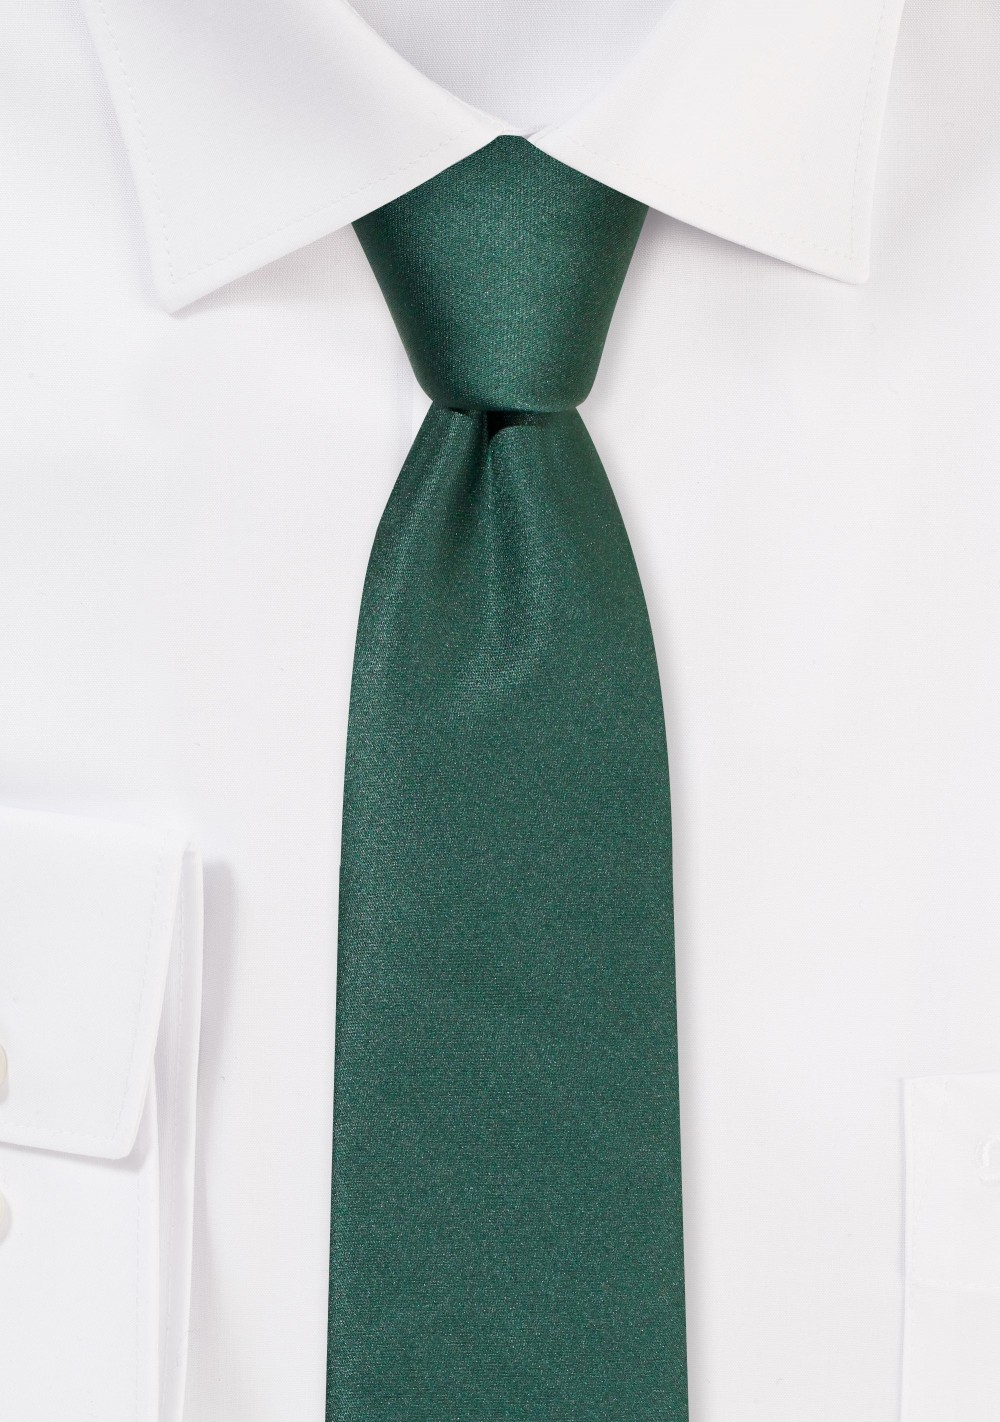 Solid Satin Skinny Tie in Hunter Green